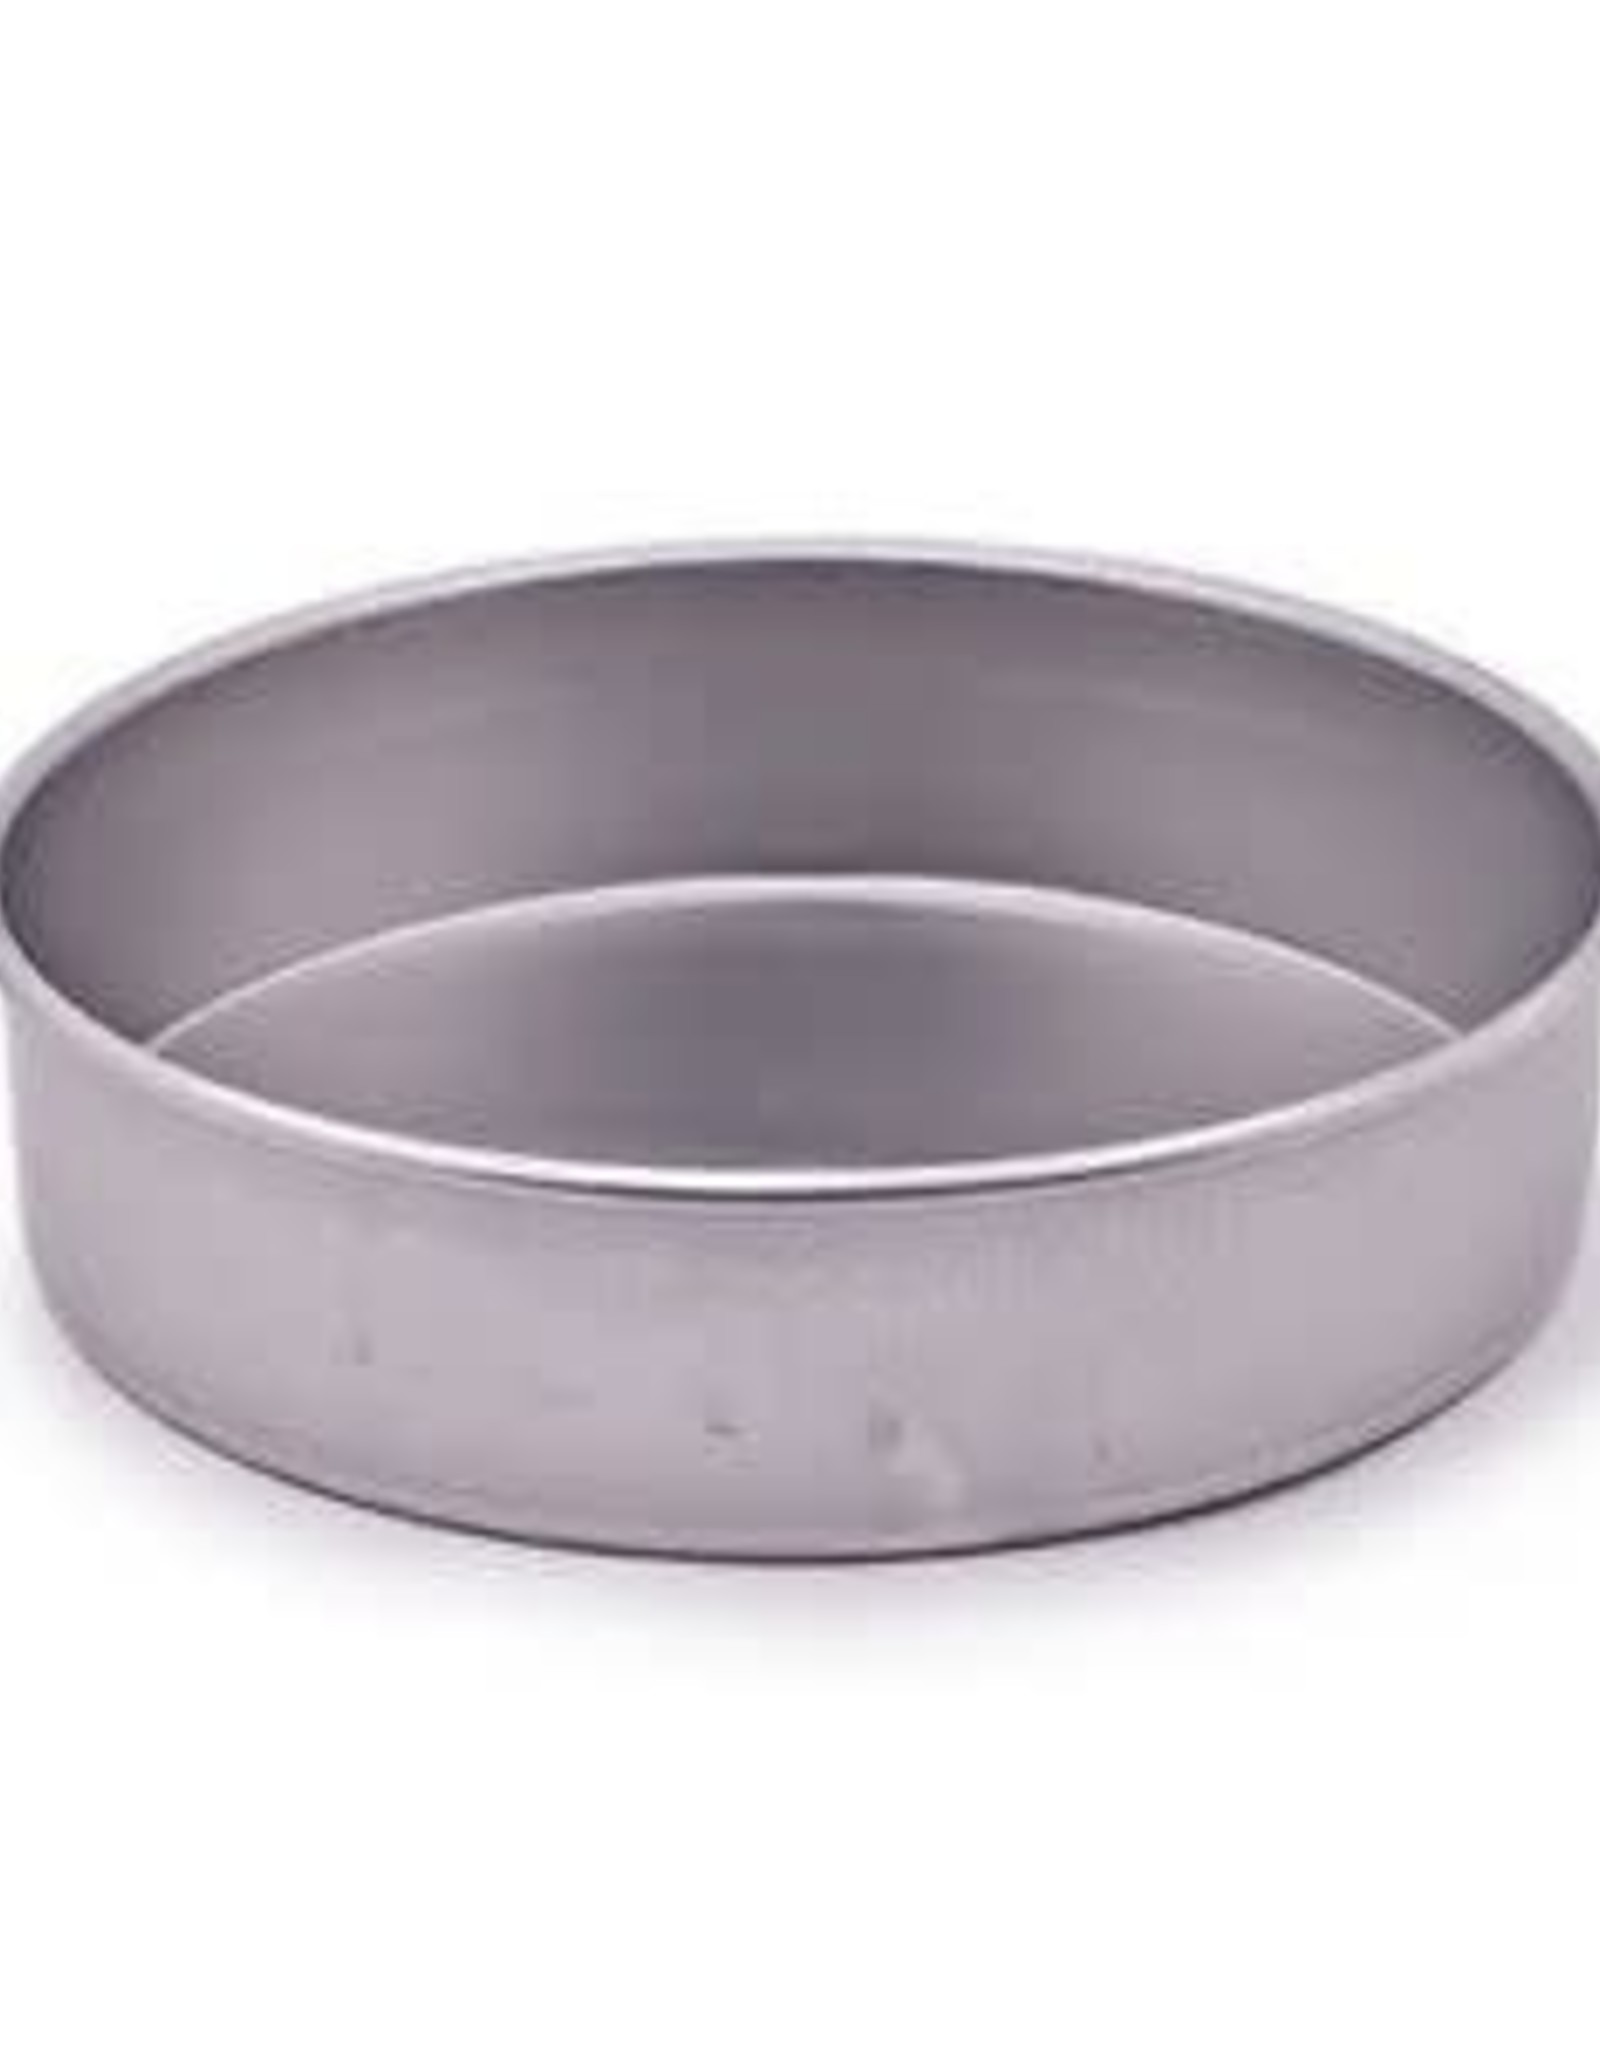 12" X 3" Round Baking Pan